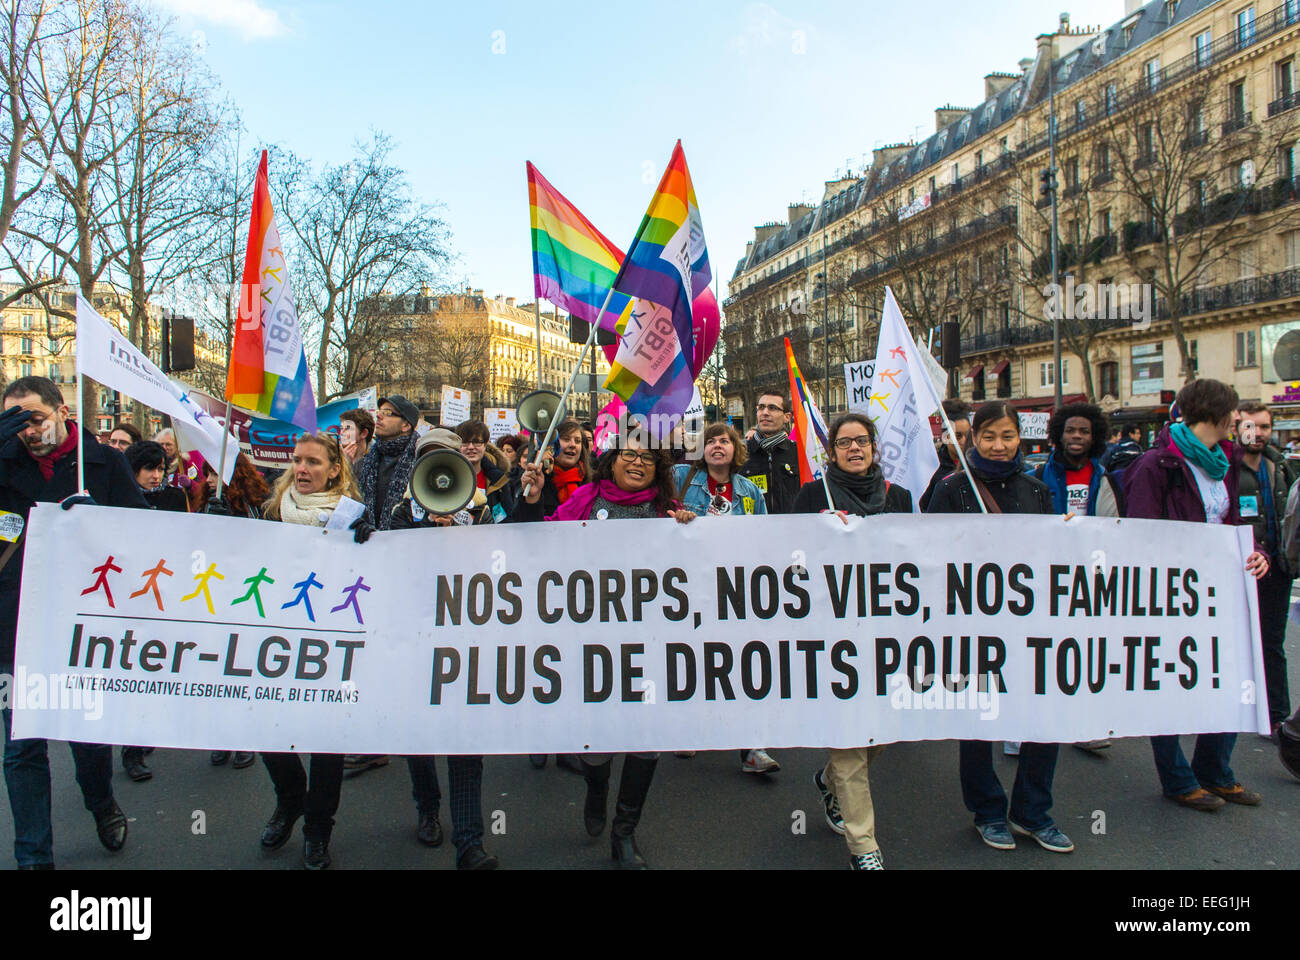 Paris, France, Français N.G.O.'s Groups, Feminist Demonstration in Honor of 40th Anniversary of avortement Law légalisation, Inter LGBTQ protestatation, ONG, foule adolescents tenant des bannières «pro choice» militantisme féministe, étiquette des droits des gays, activisme des femmes Banque D'Images